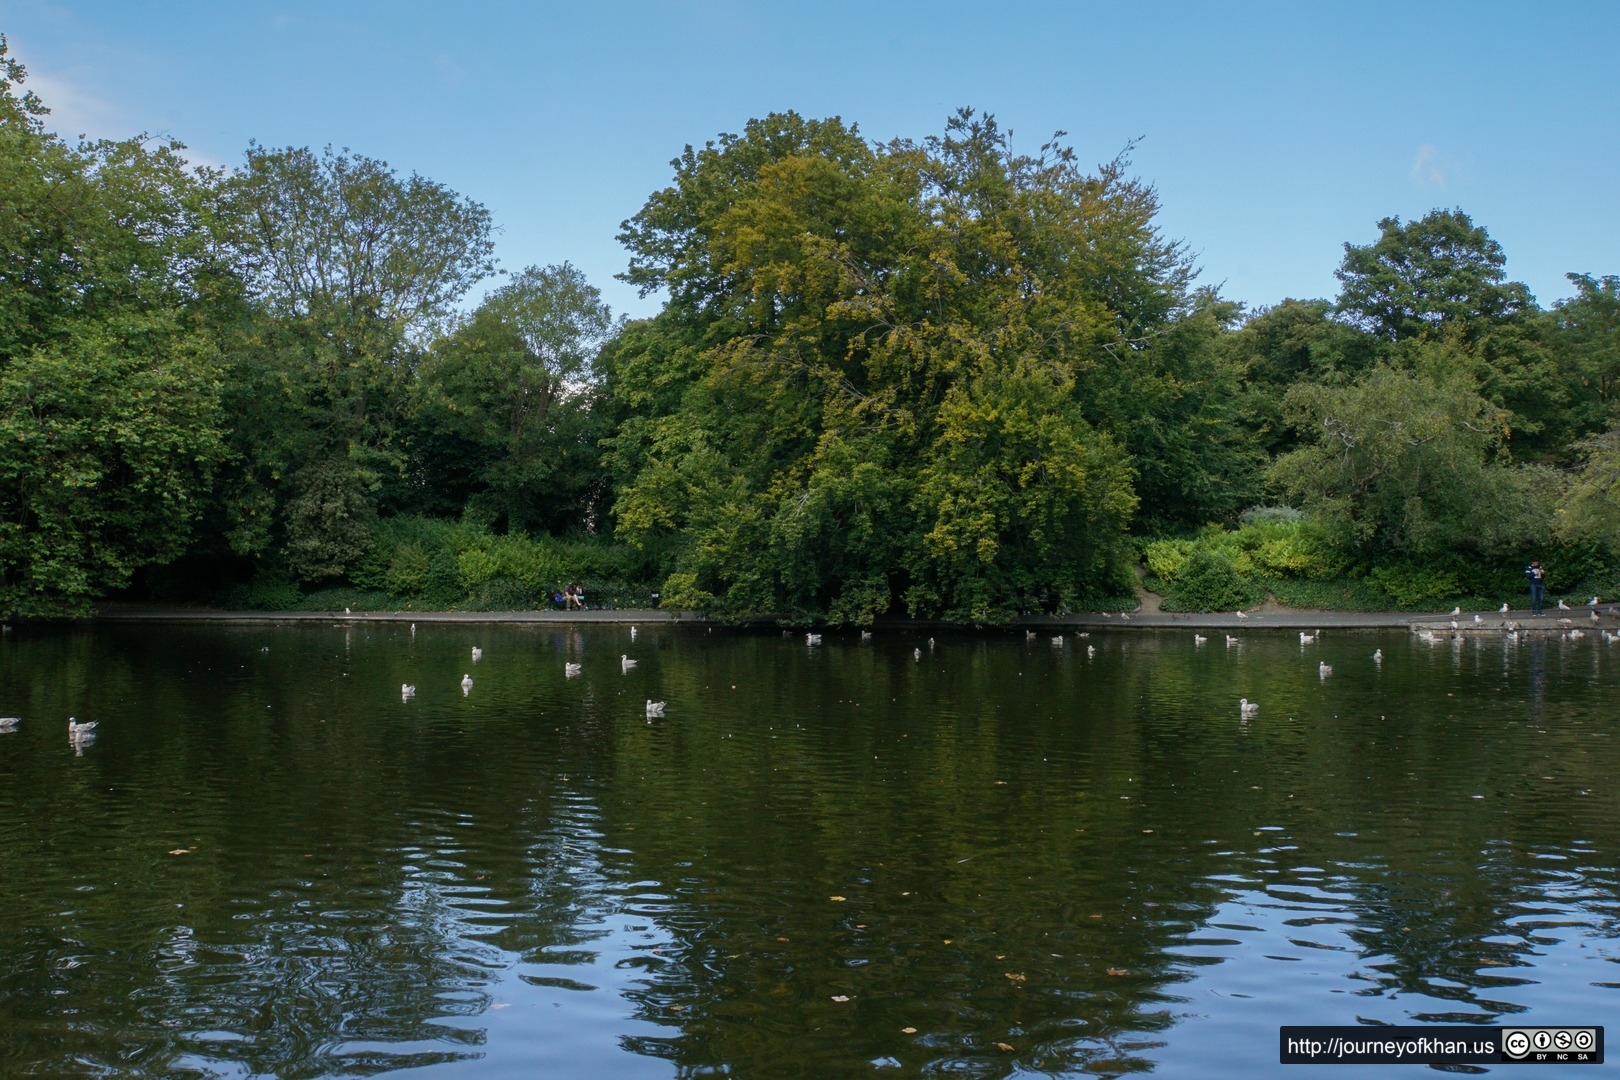 Quiet Pond in St. Anne's Park